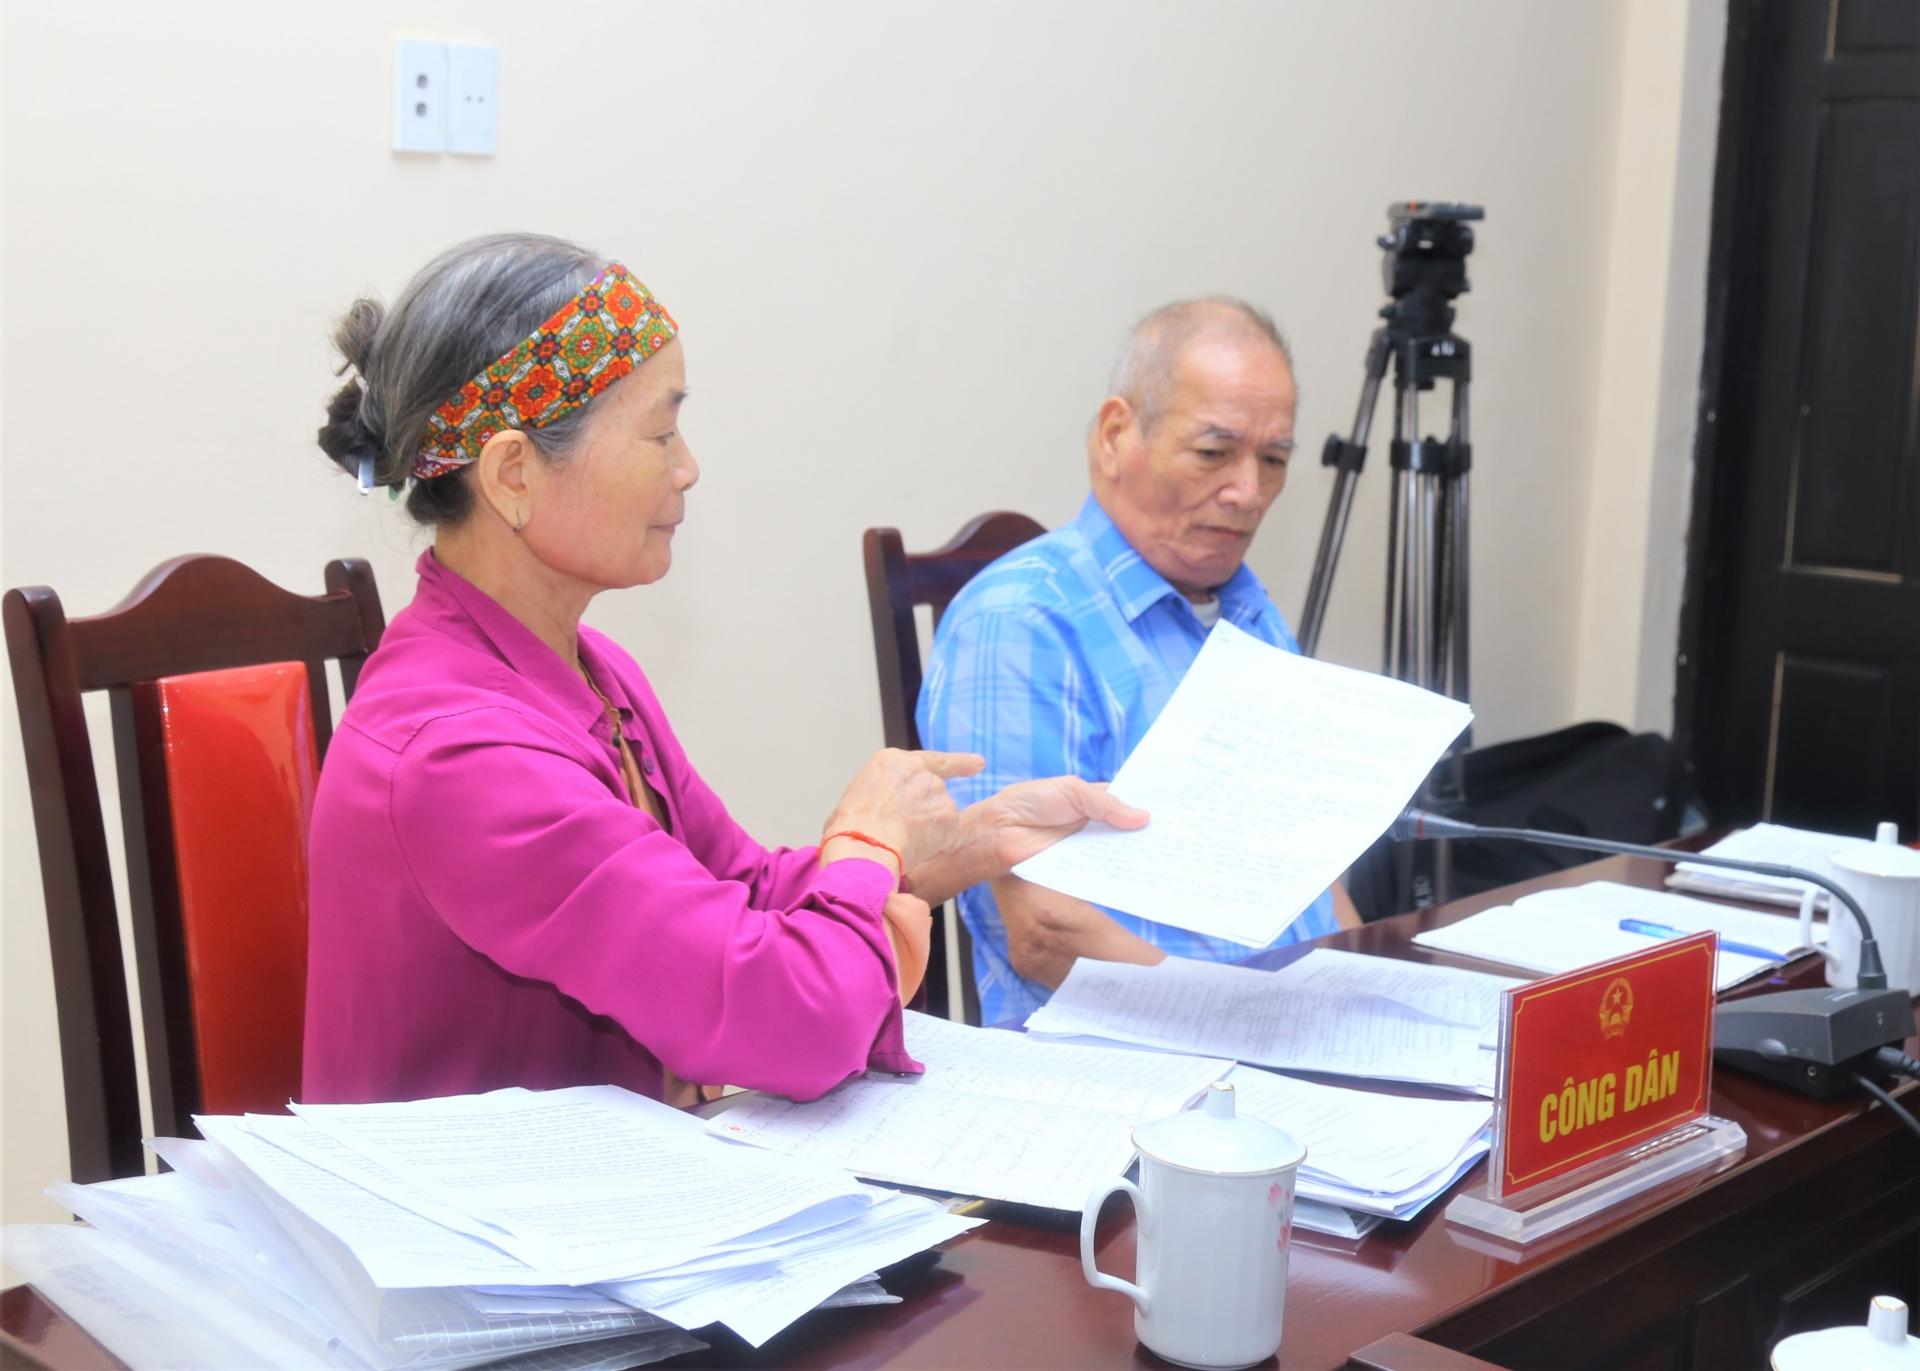 Ông Nguyễn Chiến Binh và vợ là bà Hoàng Thị Điêng trú tại tổ 4, thị trấn Cốc Pài trình bày nội dung khiếu nại.